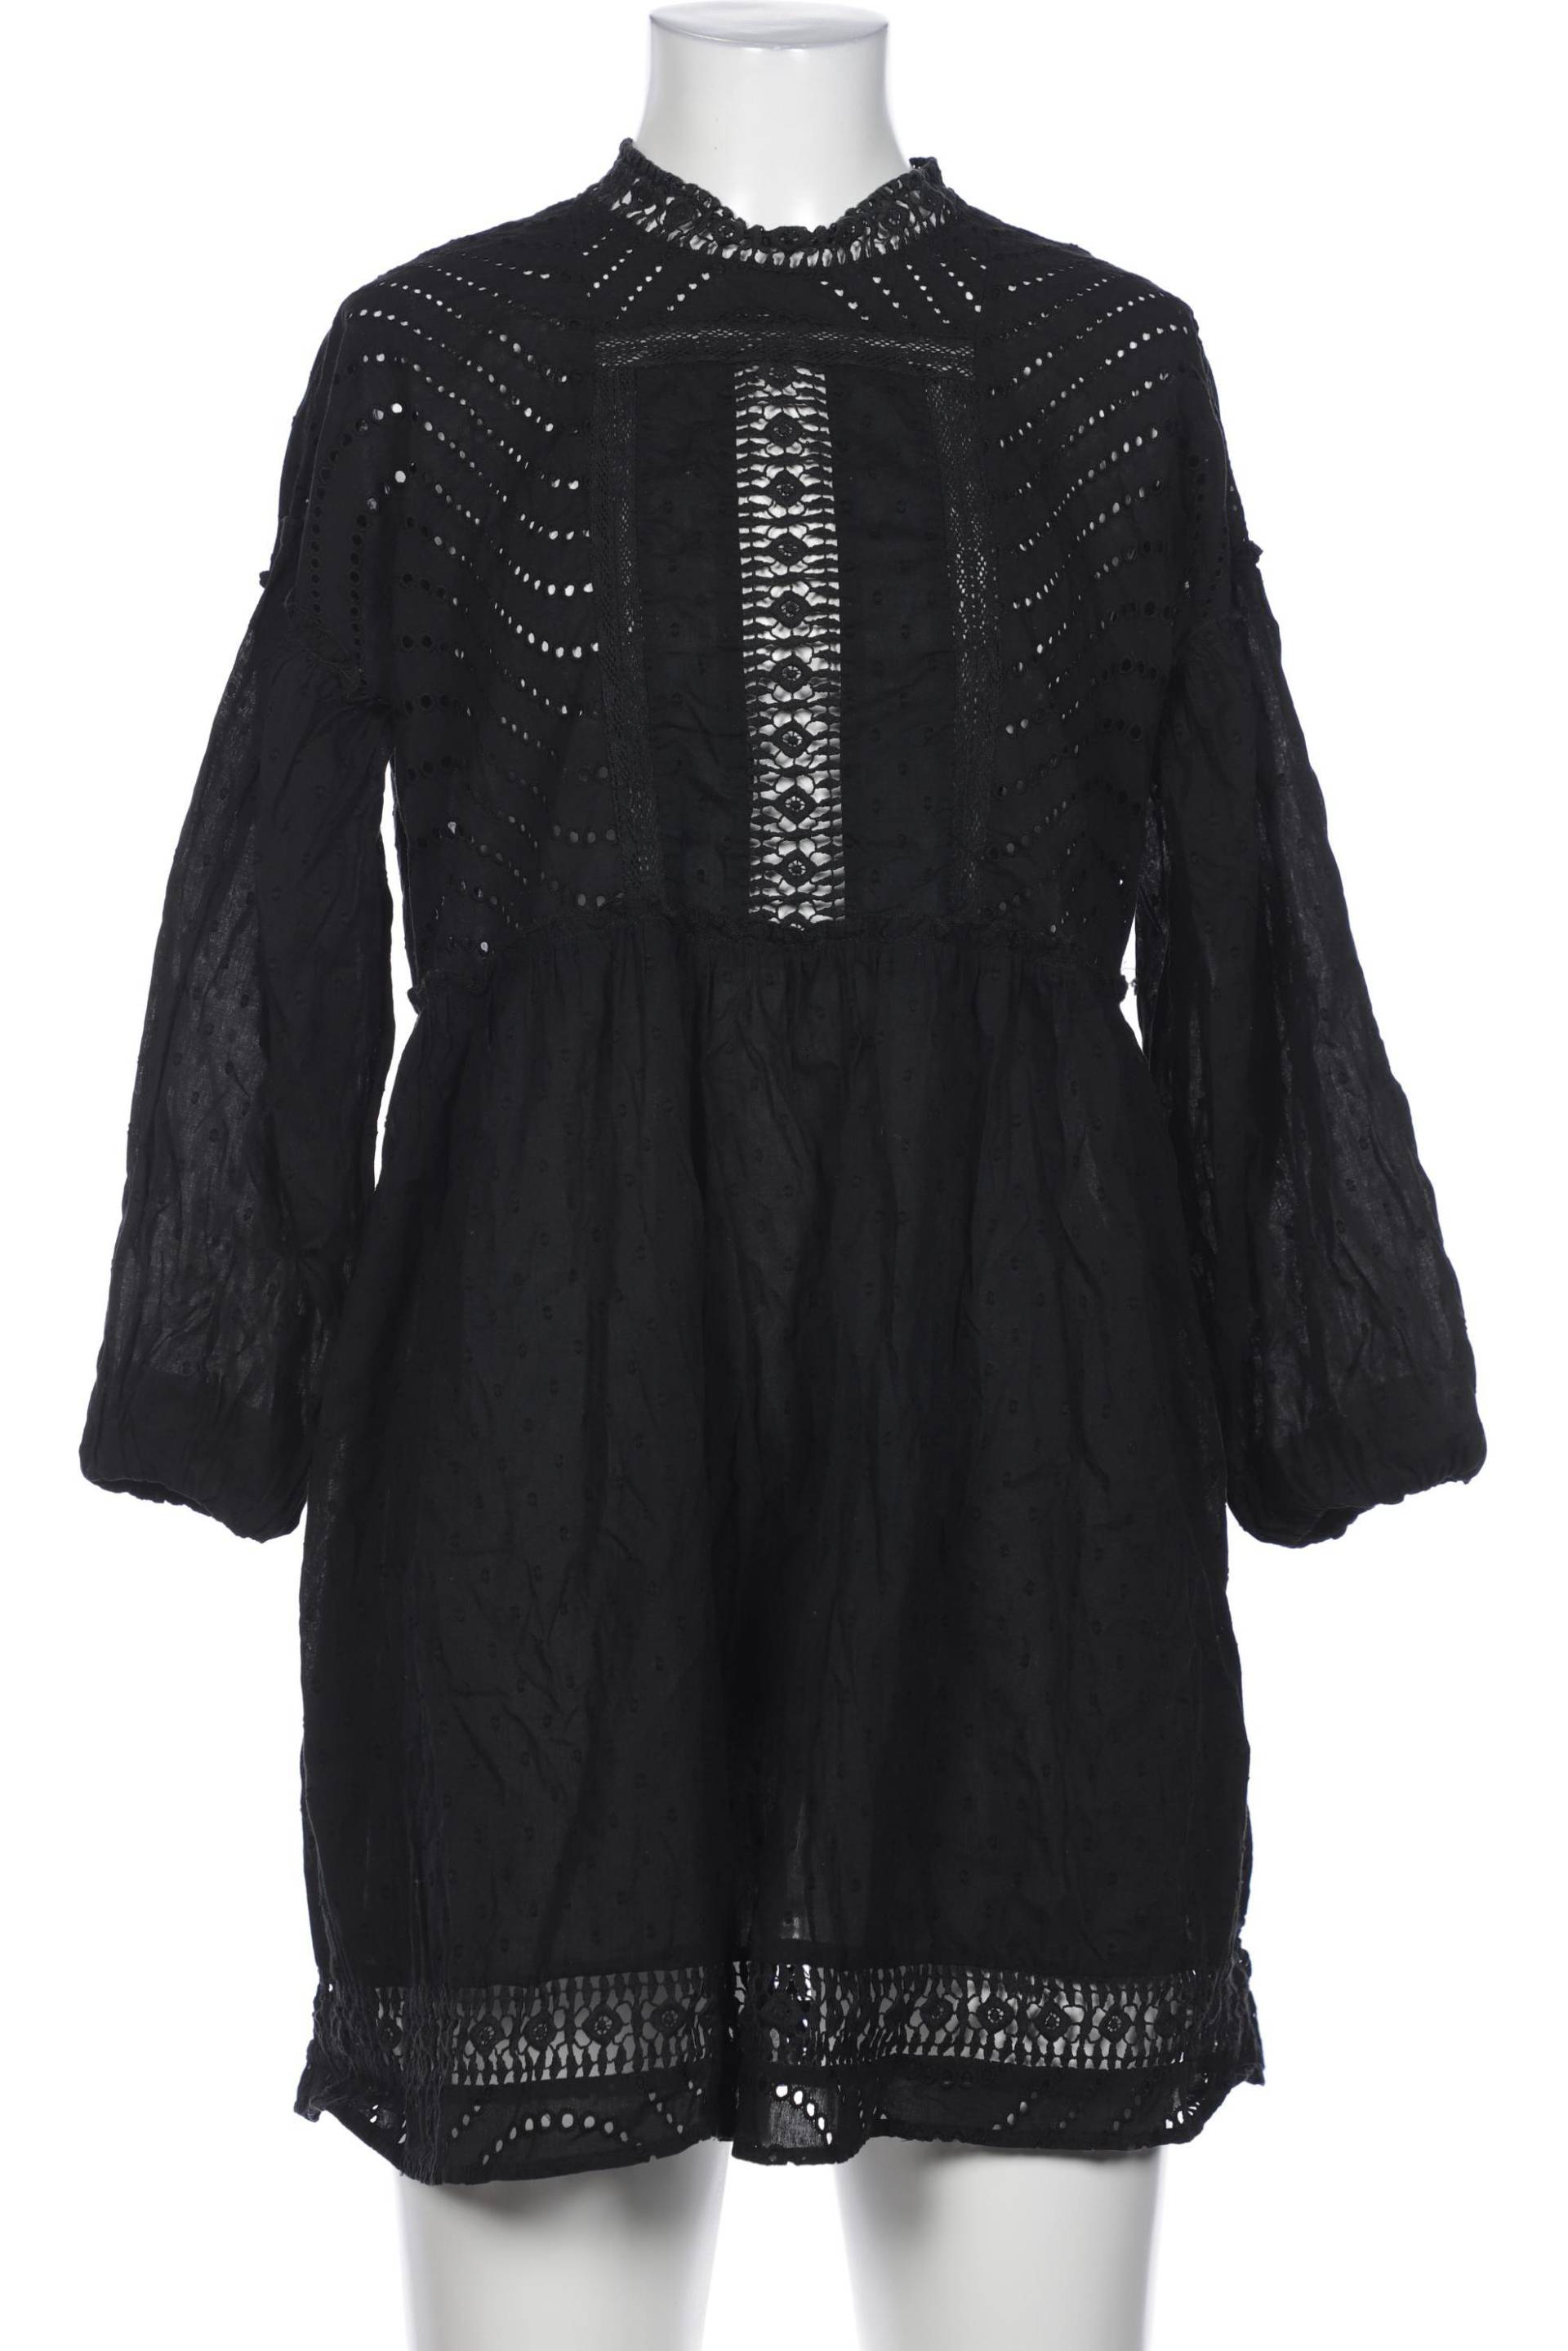 asos Damen Kleid, schwarz, Gr. 38 von asos